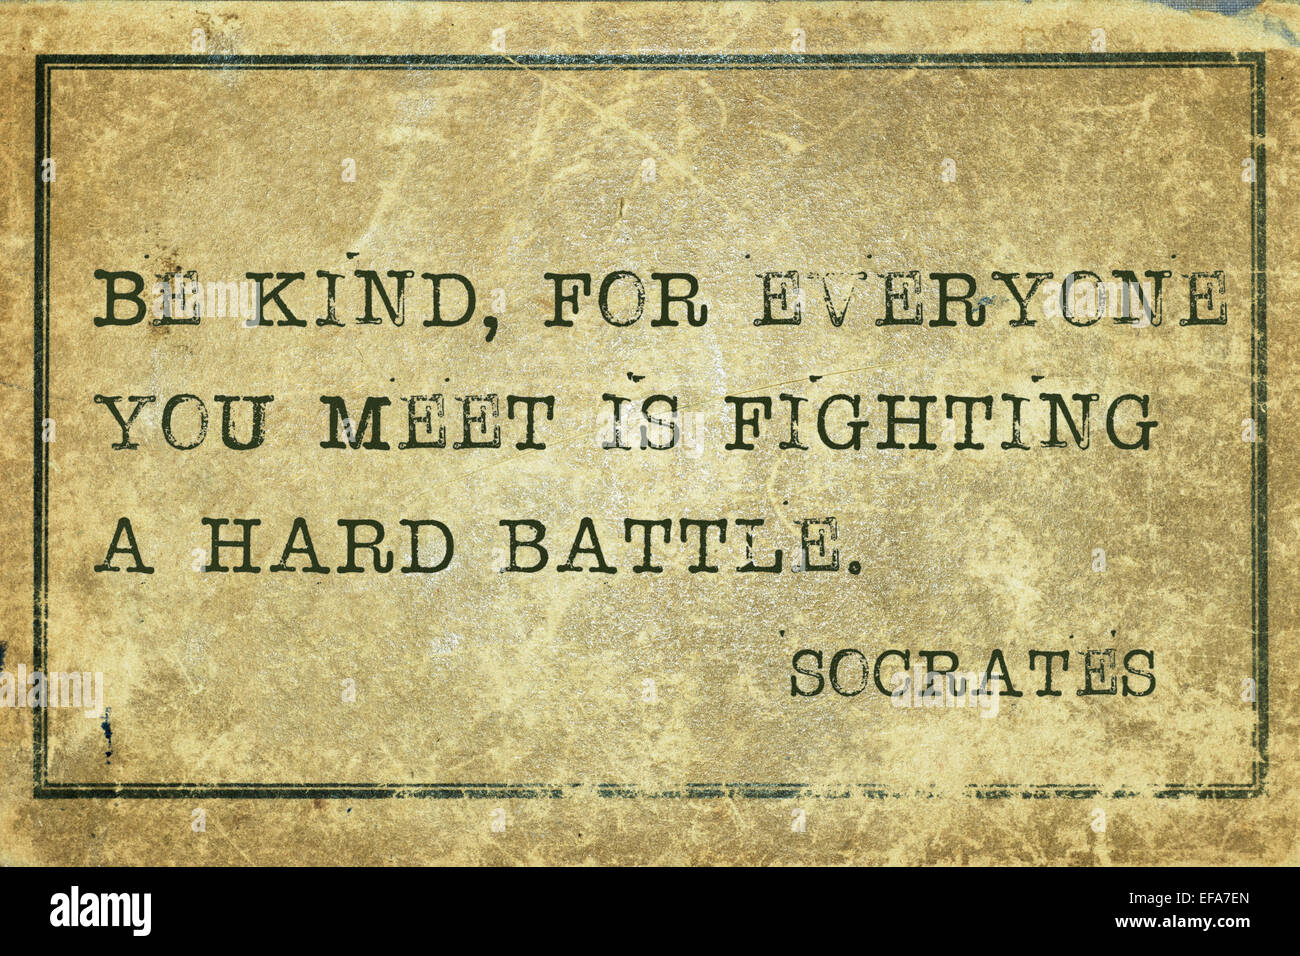 Seien Sie freundlich, denn jeder trifft man kämpft einen harten Schlacht-antike griechischen Philosoph Sokrates Zitat auf Grunge Oldtimer gedruckt Stockfoto